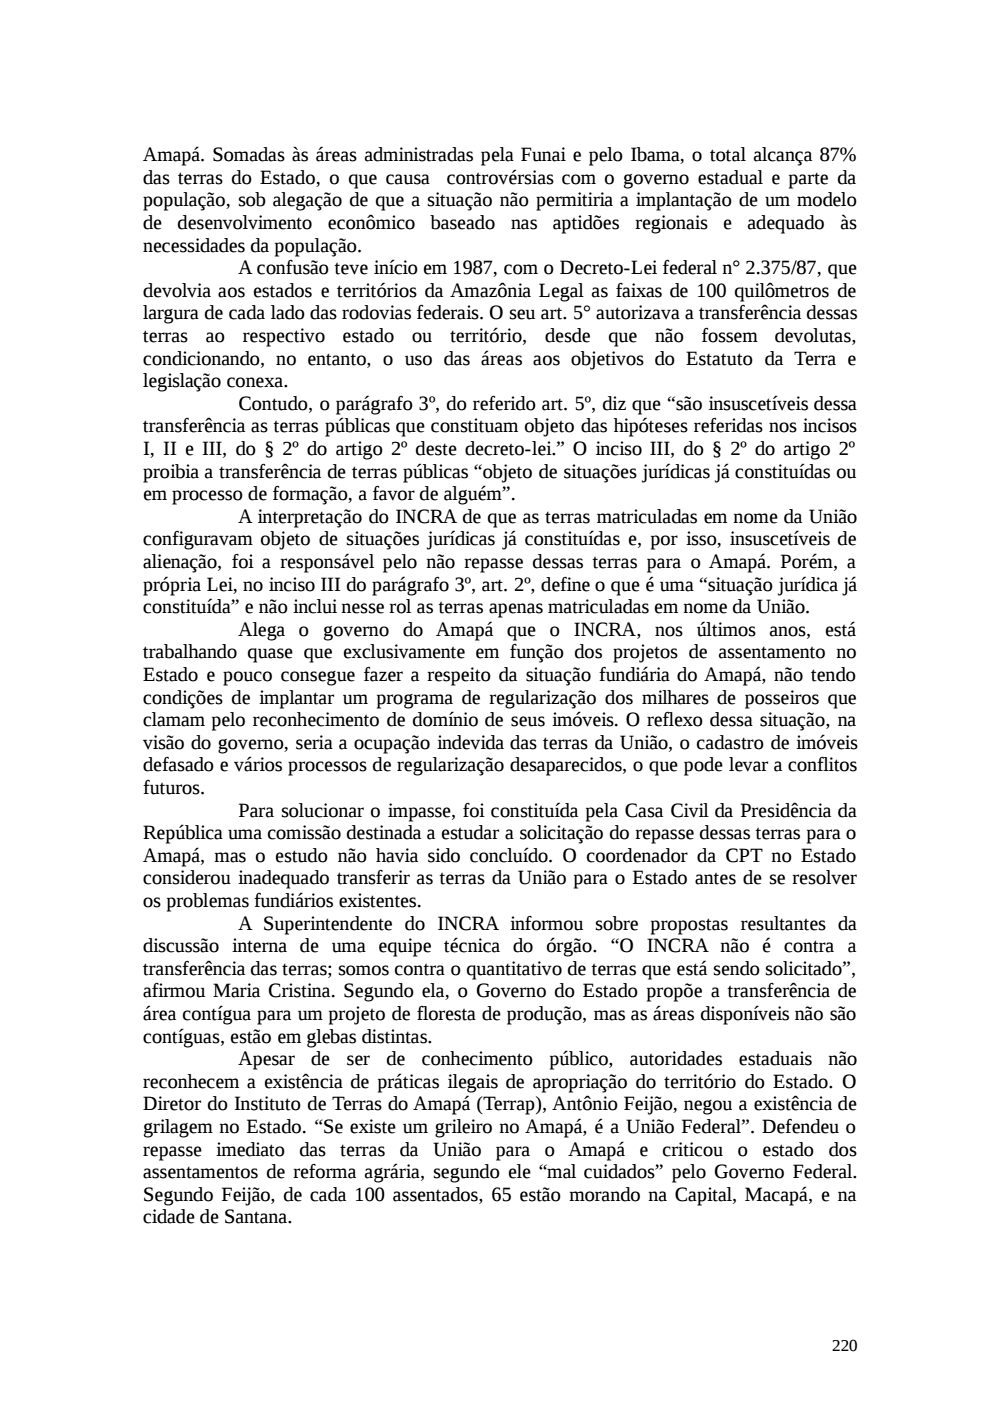 Page 220 from Relatório final da comissão